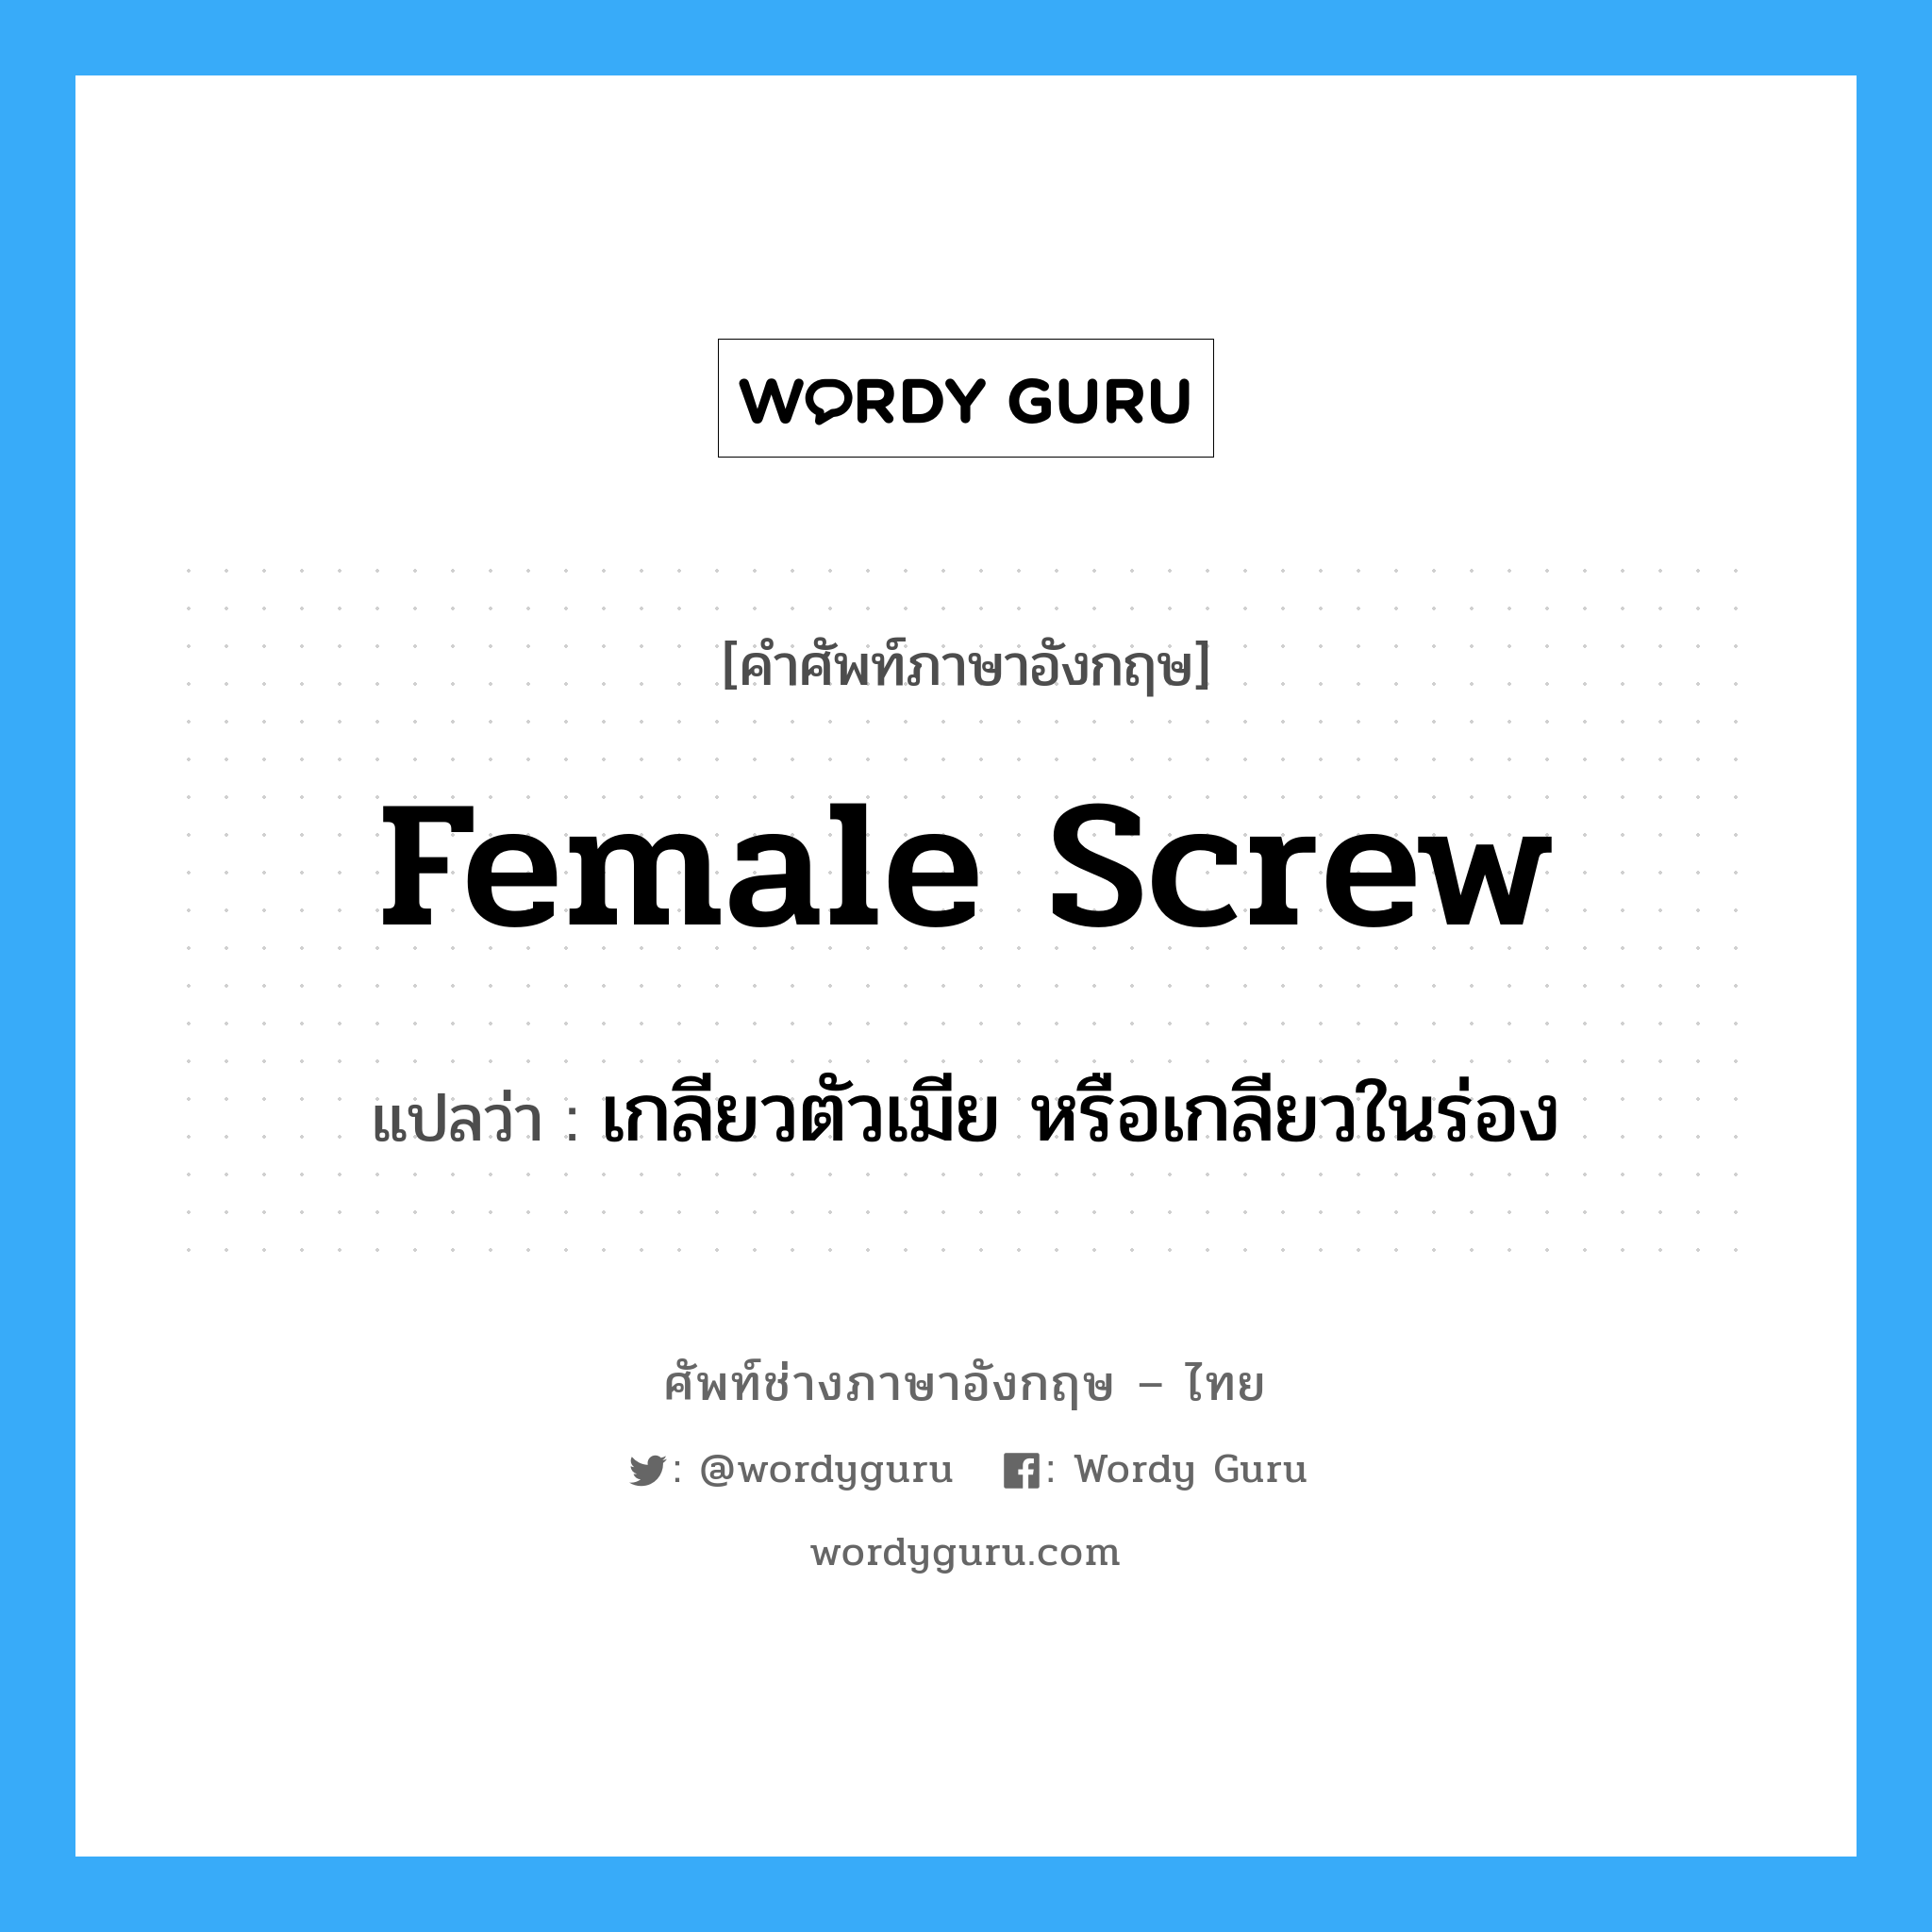 female screw แปลว่า?, คำศัพท์ช่างภาษาอังกฤษ - ไทย female screw คำศัพท์ภาษาอังกฤษ female screw แปลว่า เกลียวตัวเมีย หรือเกลียวในร่อง